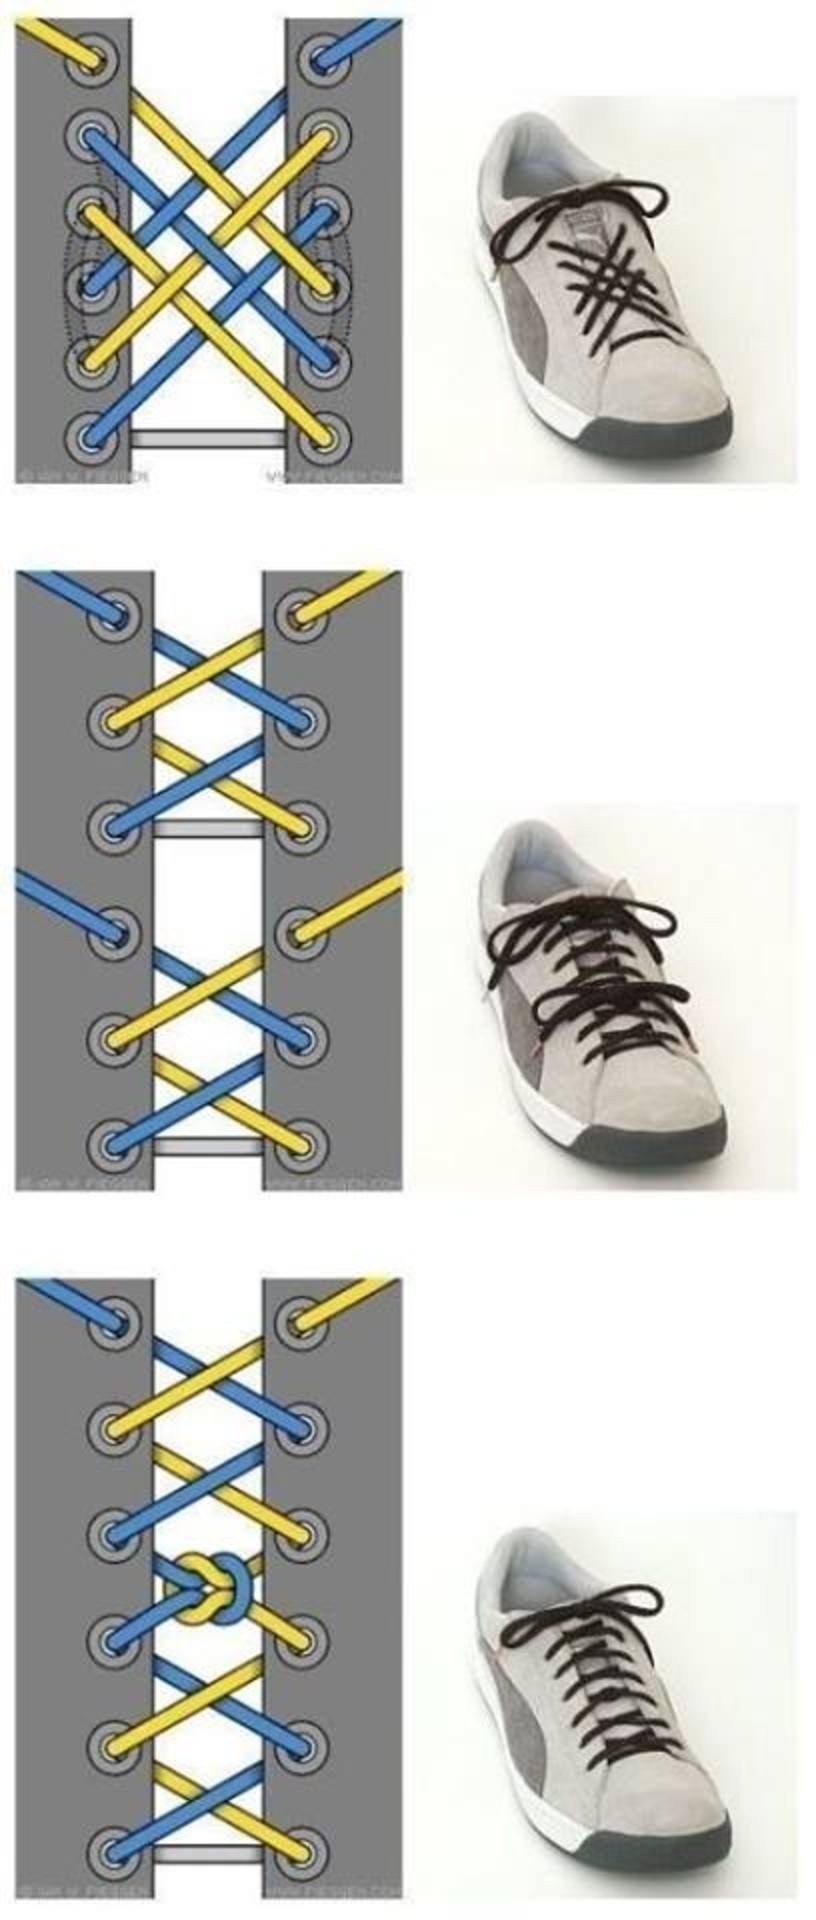 Завязать шнурки на 6 дырок женские. Типы шнурования шнурков на 5 дырок. Шнурки зашнуровать 5 дырок. Способы зашнуровать кроссовки 5 дырок. Шнурование молния 5 дырок.